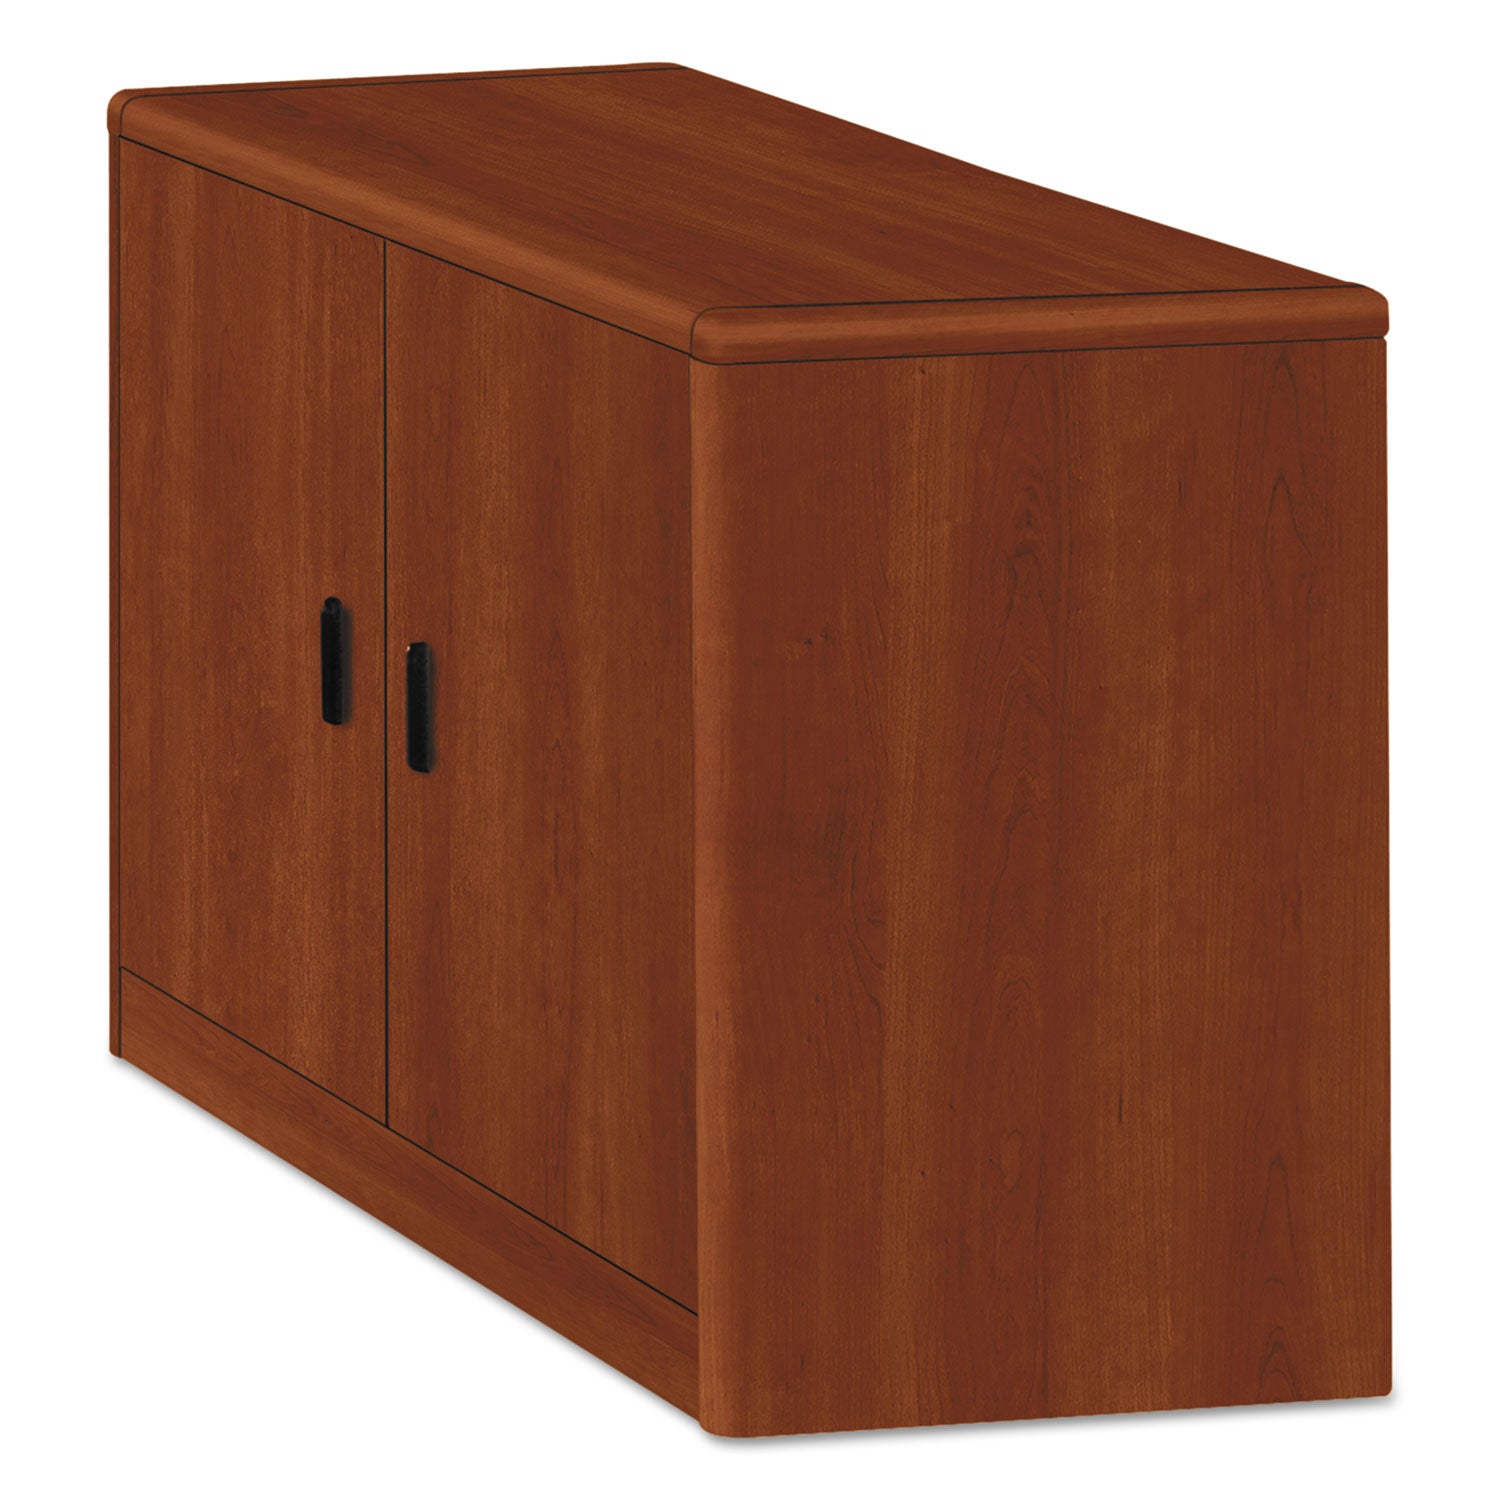 10700 Series Locking Storage Cabinet, 36w x 20d x 29.5h, Cognac - 